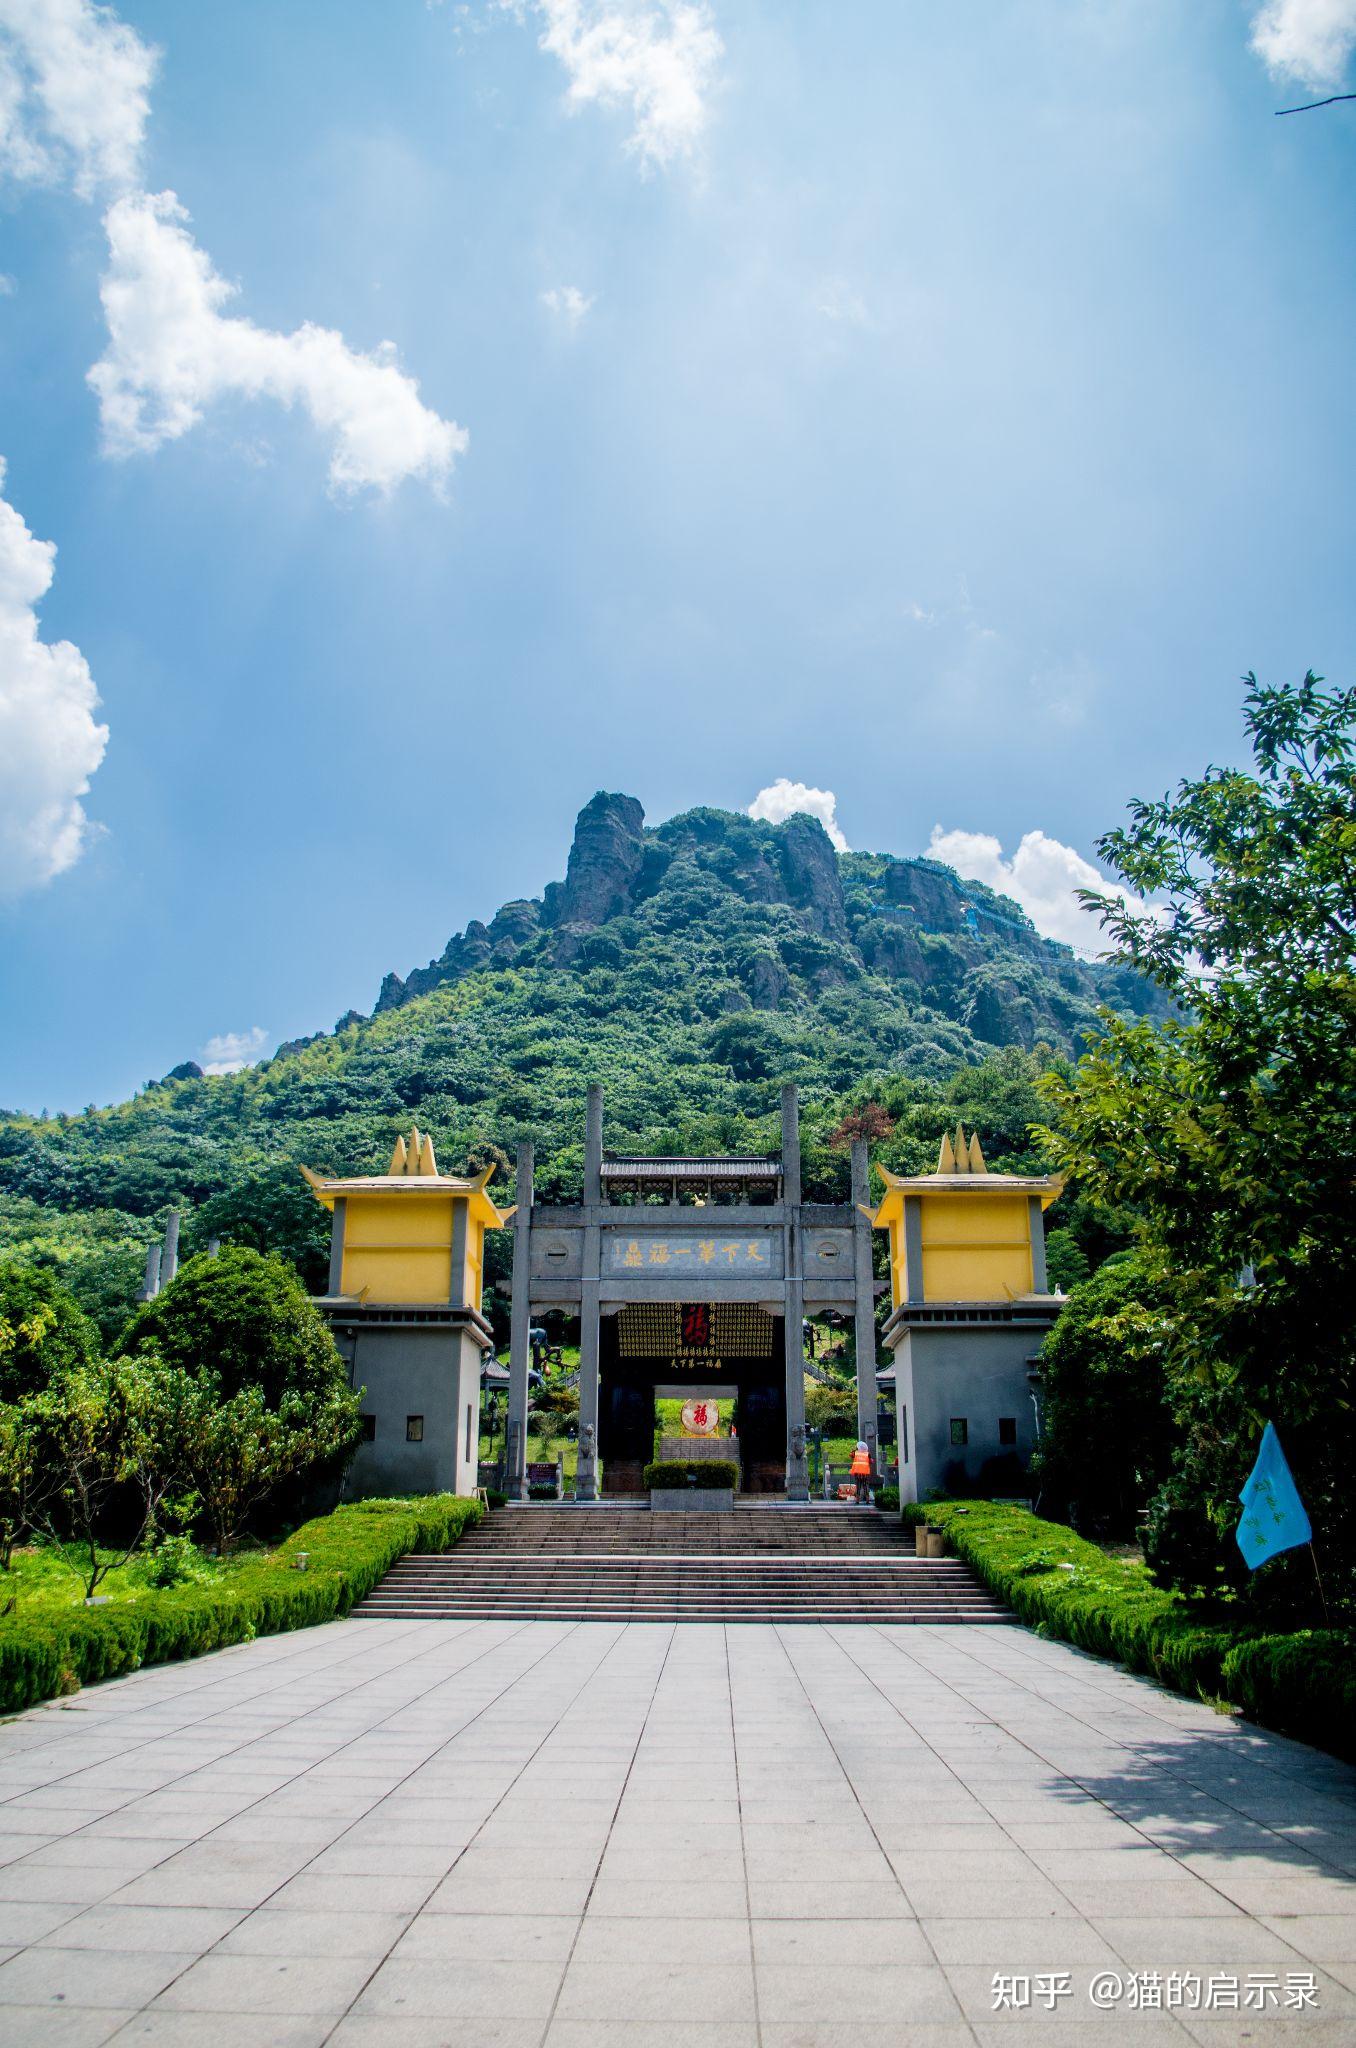 「芜湖马仁奇峰景区对已接种疫苗游客免费」,对此你怎么看?